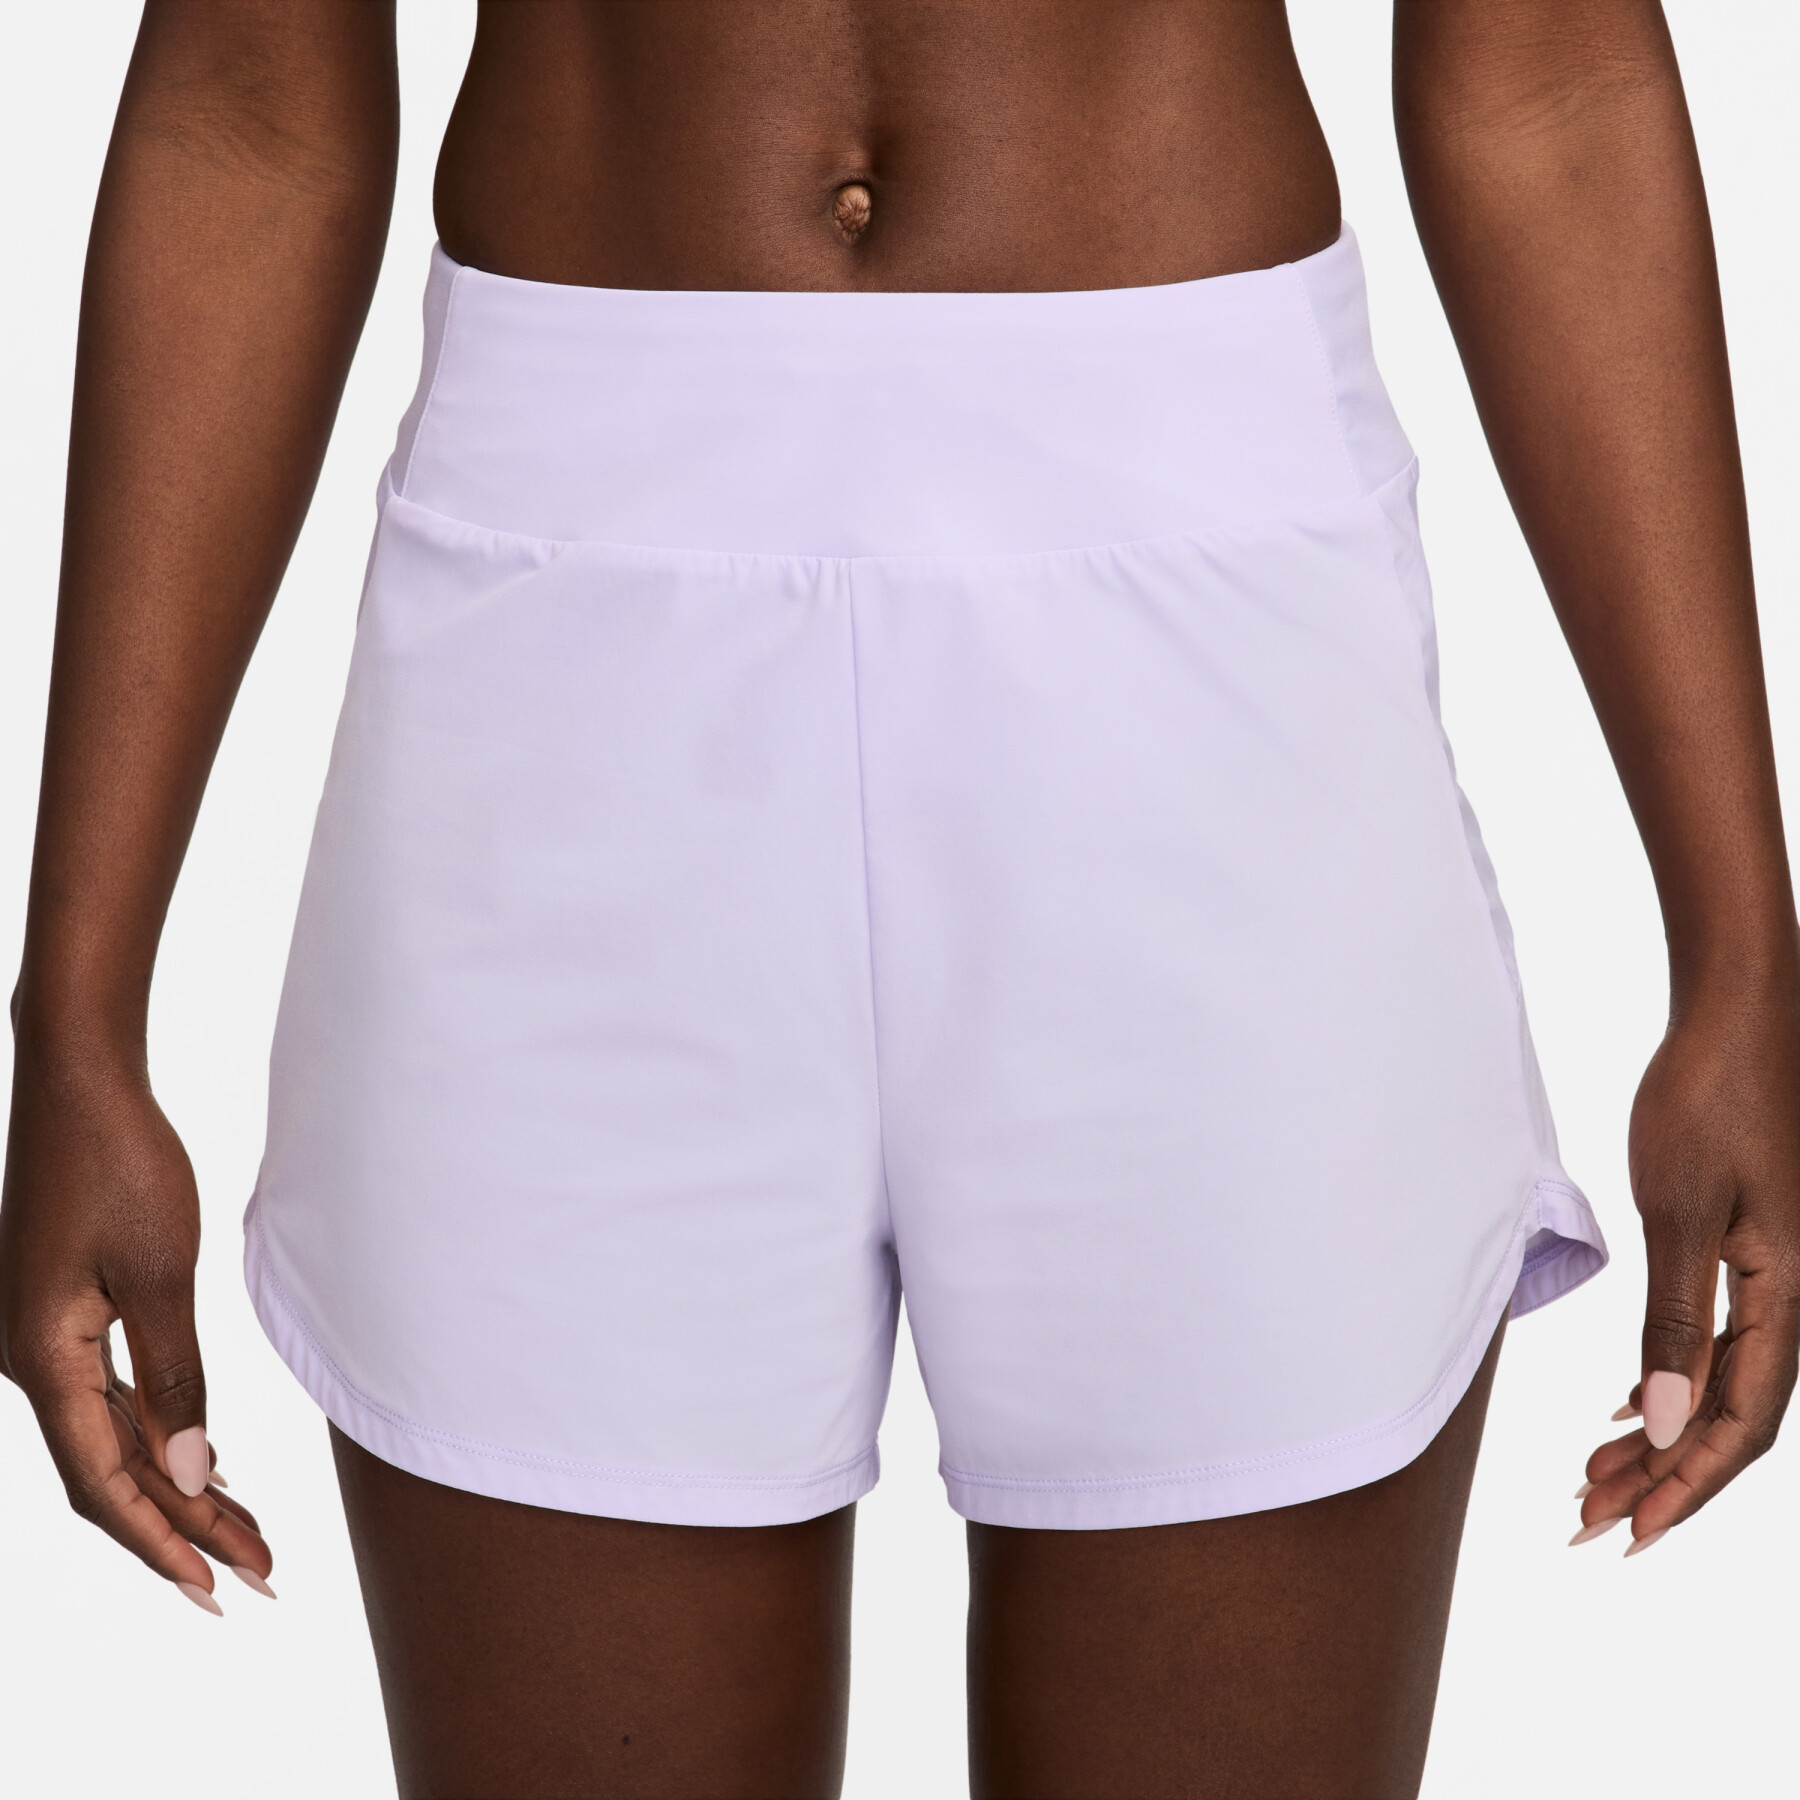 Pantaloncini da donna a vita media con sottopantaloncino integrato Nike Bliss Dri-FIT